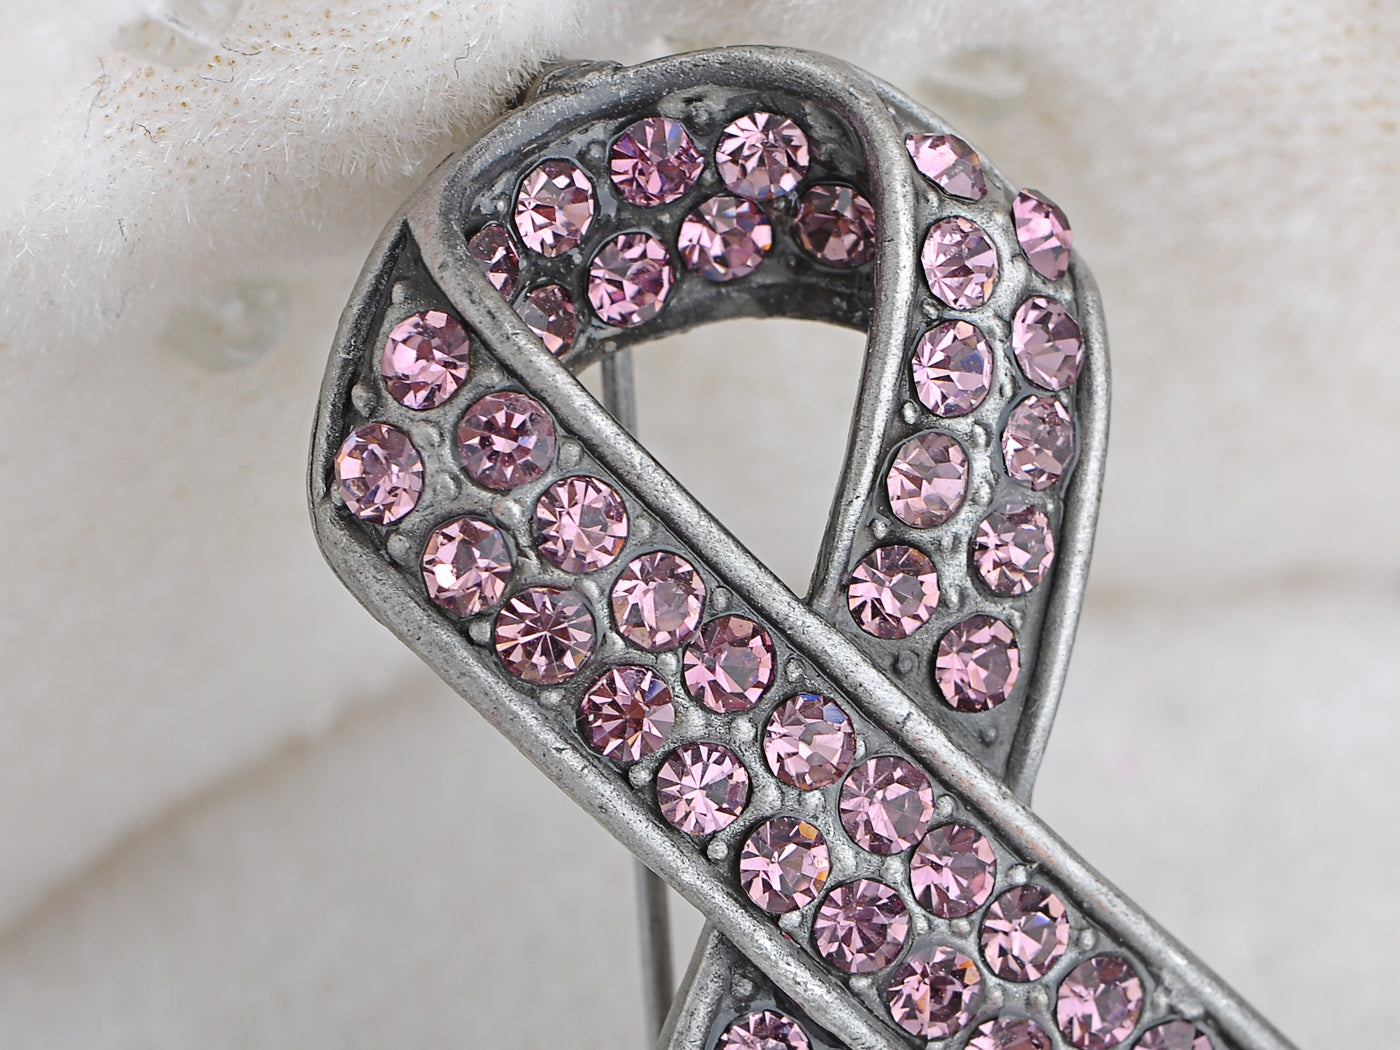 Silver Pink Breast Cancer Awareness Ribbon Brooch Pin